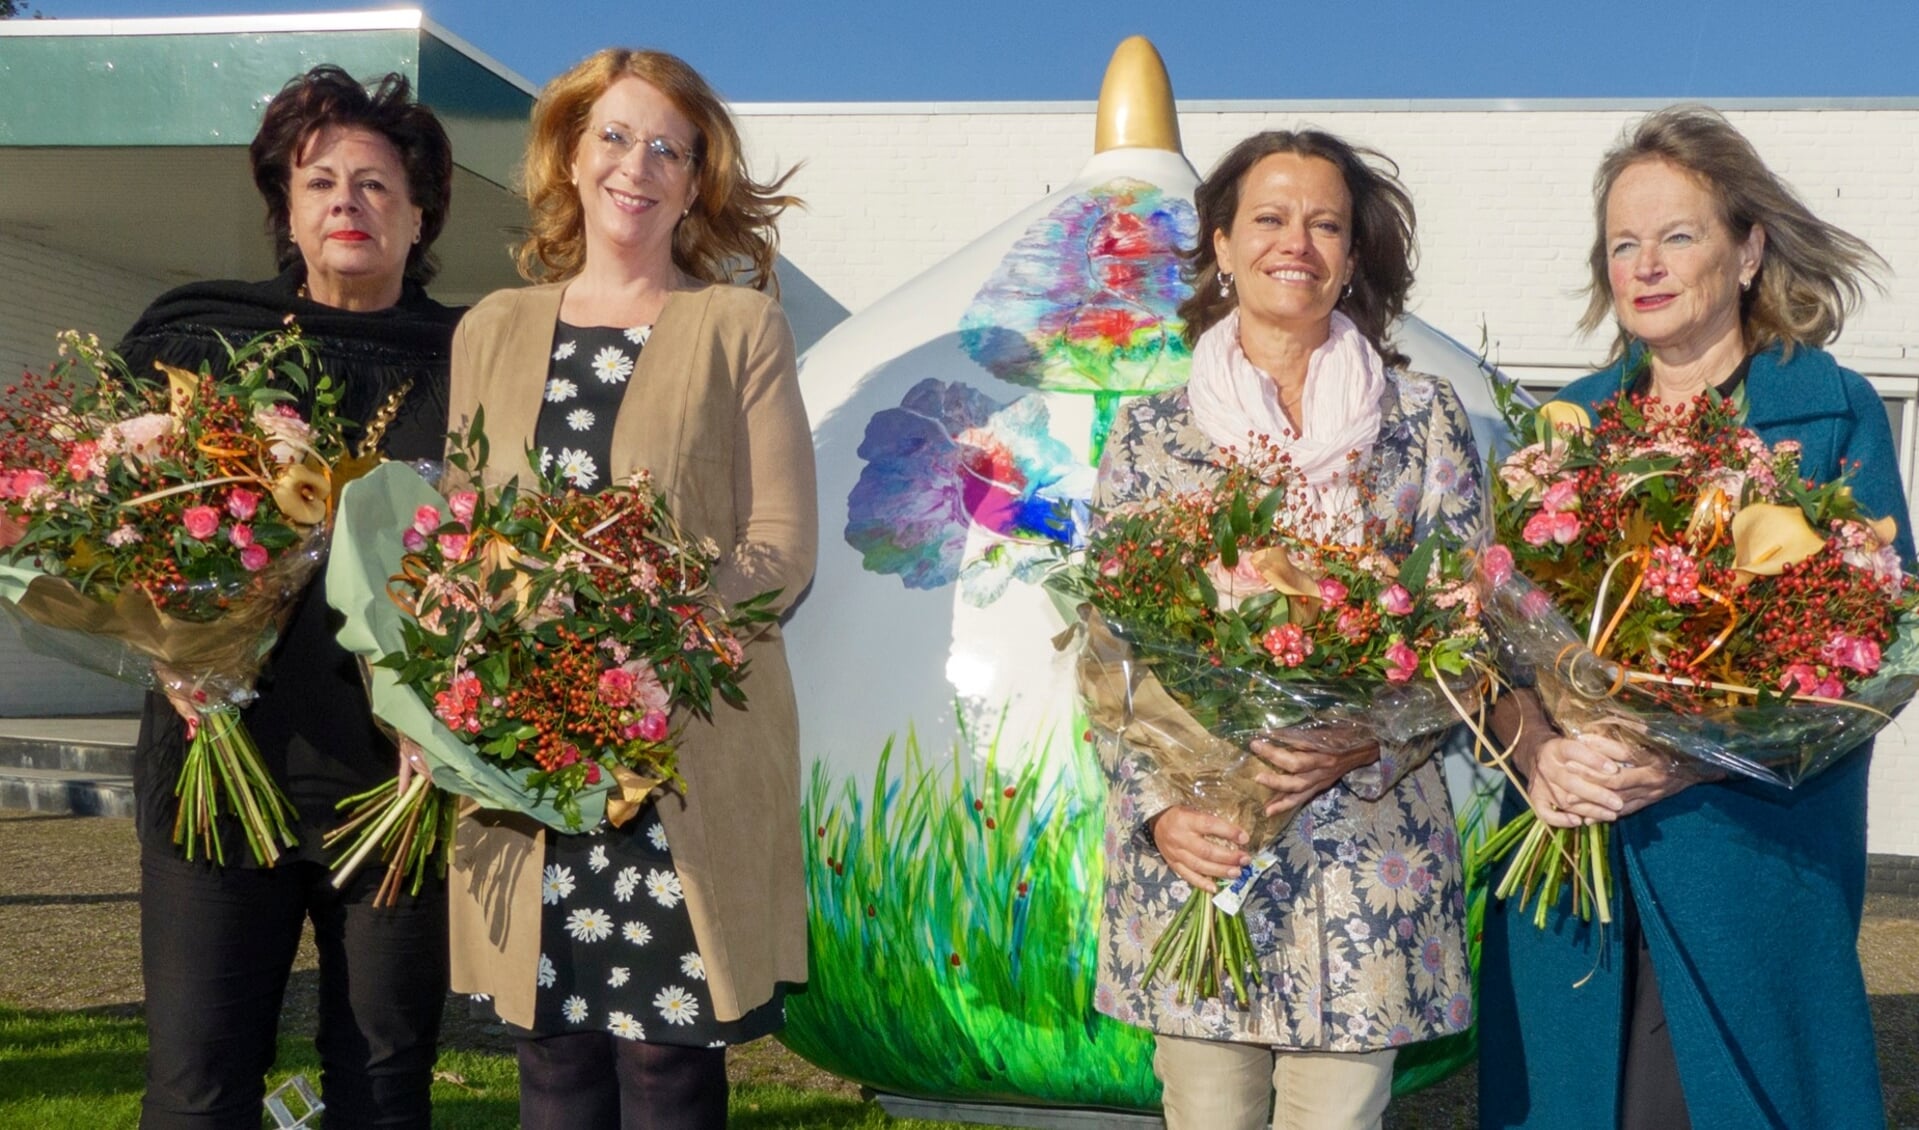 Wendy Verkleij, Carla Breuer, kunstenares Mary Willemsen en Lies Spruit na de onthulling van de Reuzenbol.